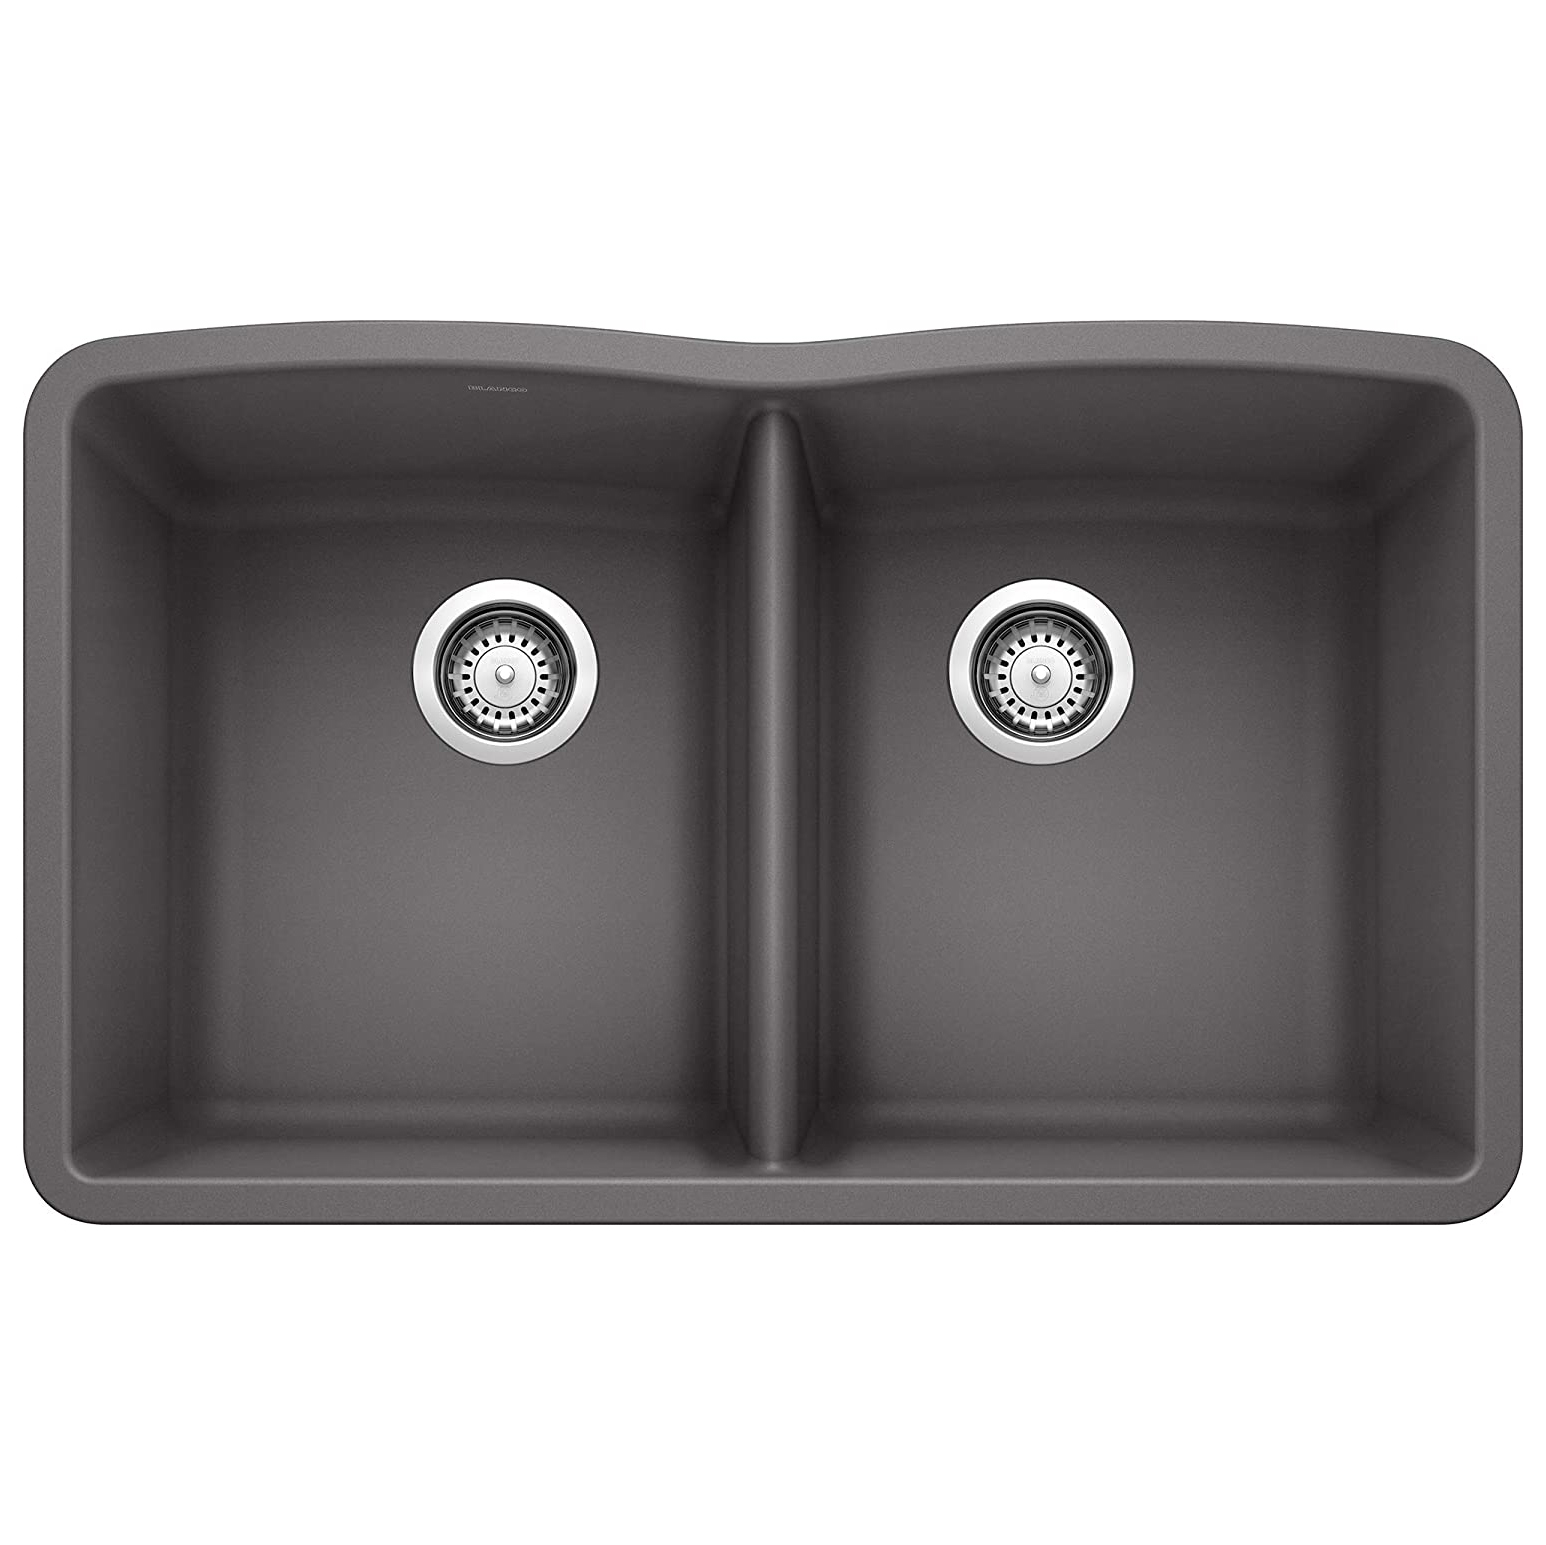 Diamond 32x19-1/4x-1/2" Equal Dbl Bowl Sink in Cinder